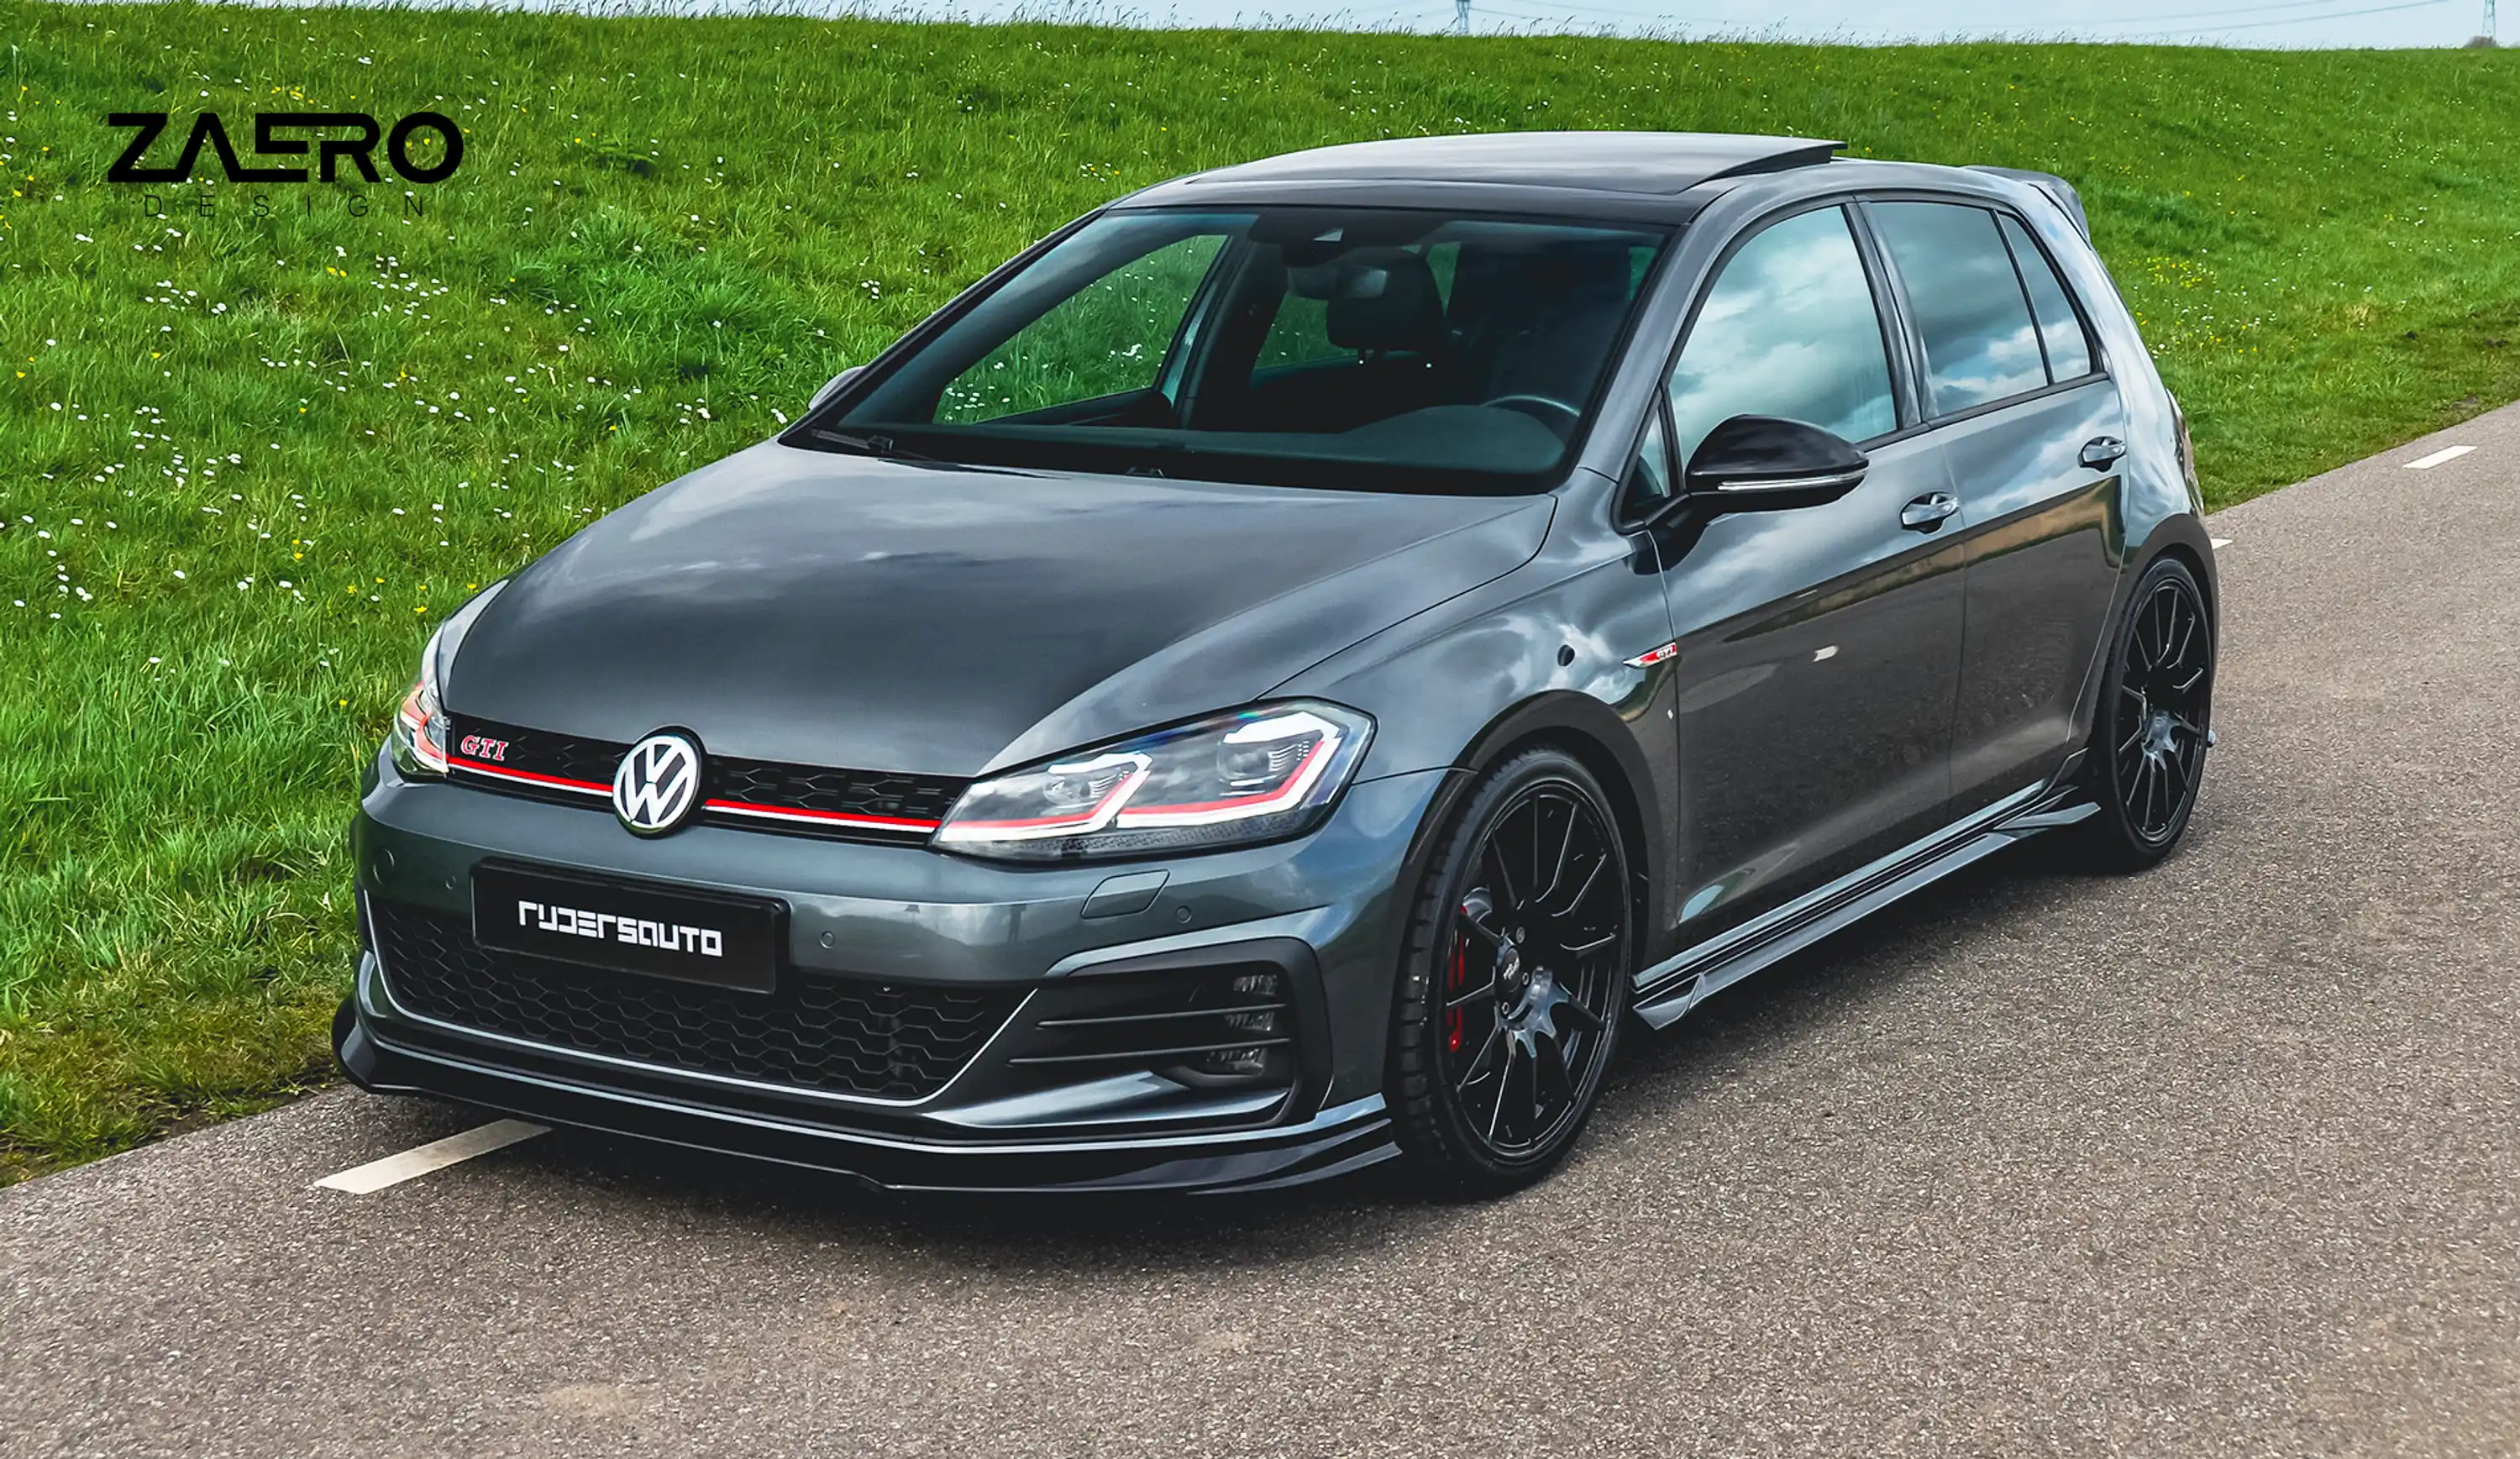 Boca Carbon Race Spec Frontlippe für VW Golf 7 GTI - online kaufen bei CFD